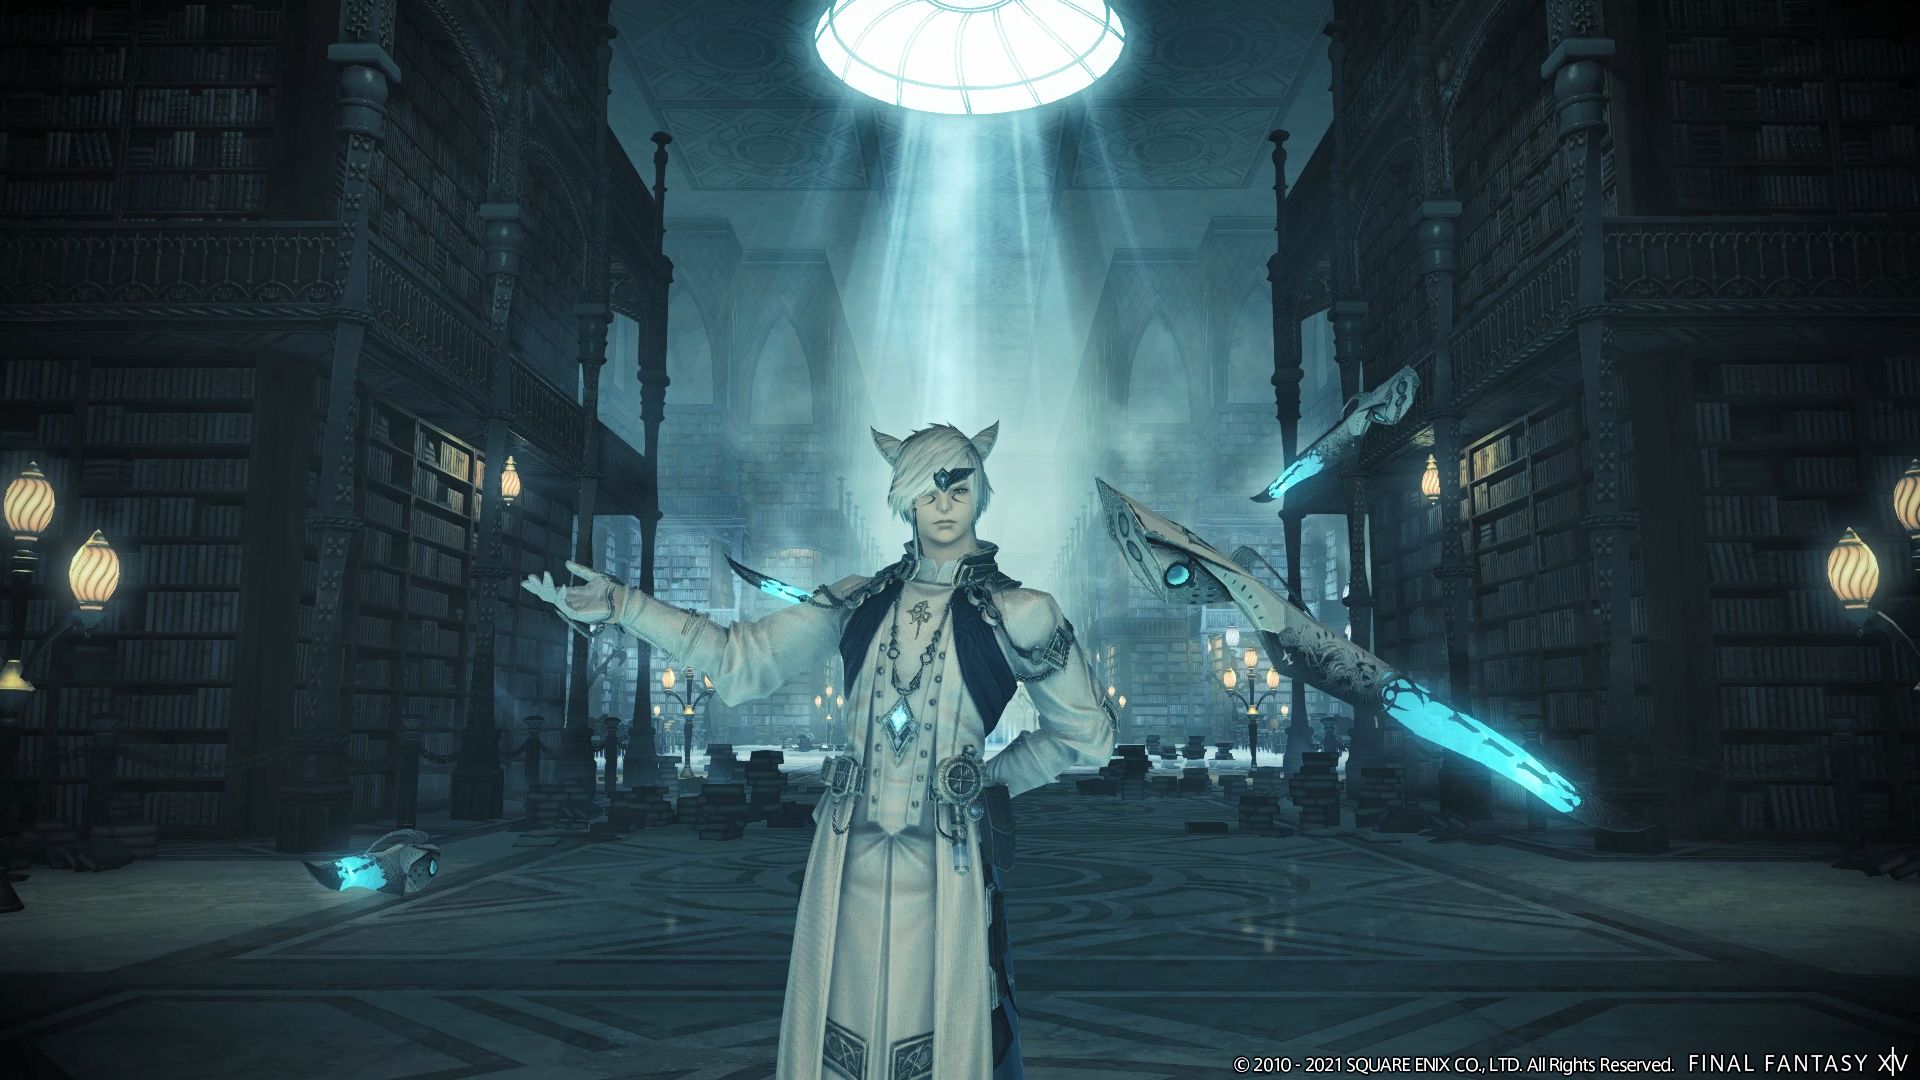 Final Fantasy 14: Endwalker review - a stellar expansion